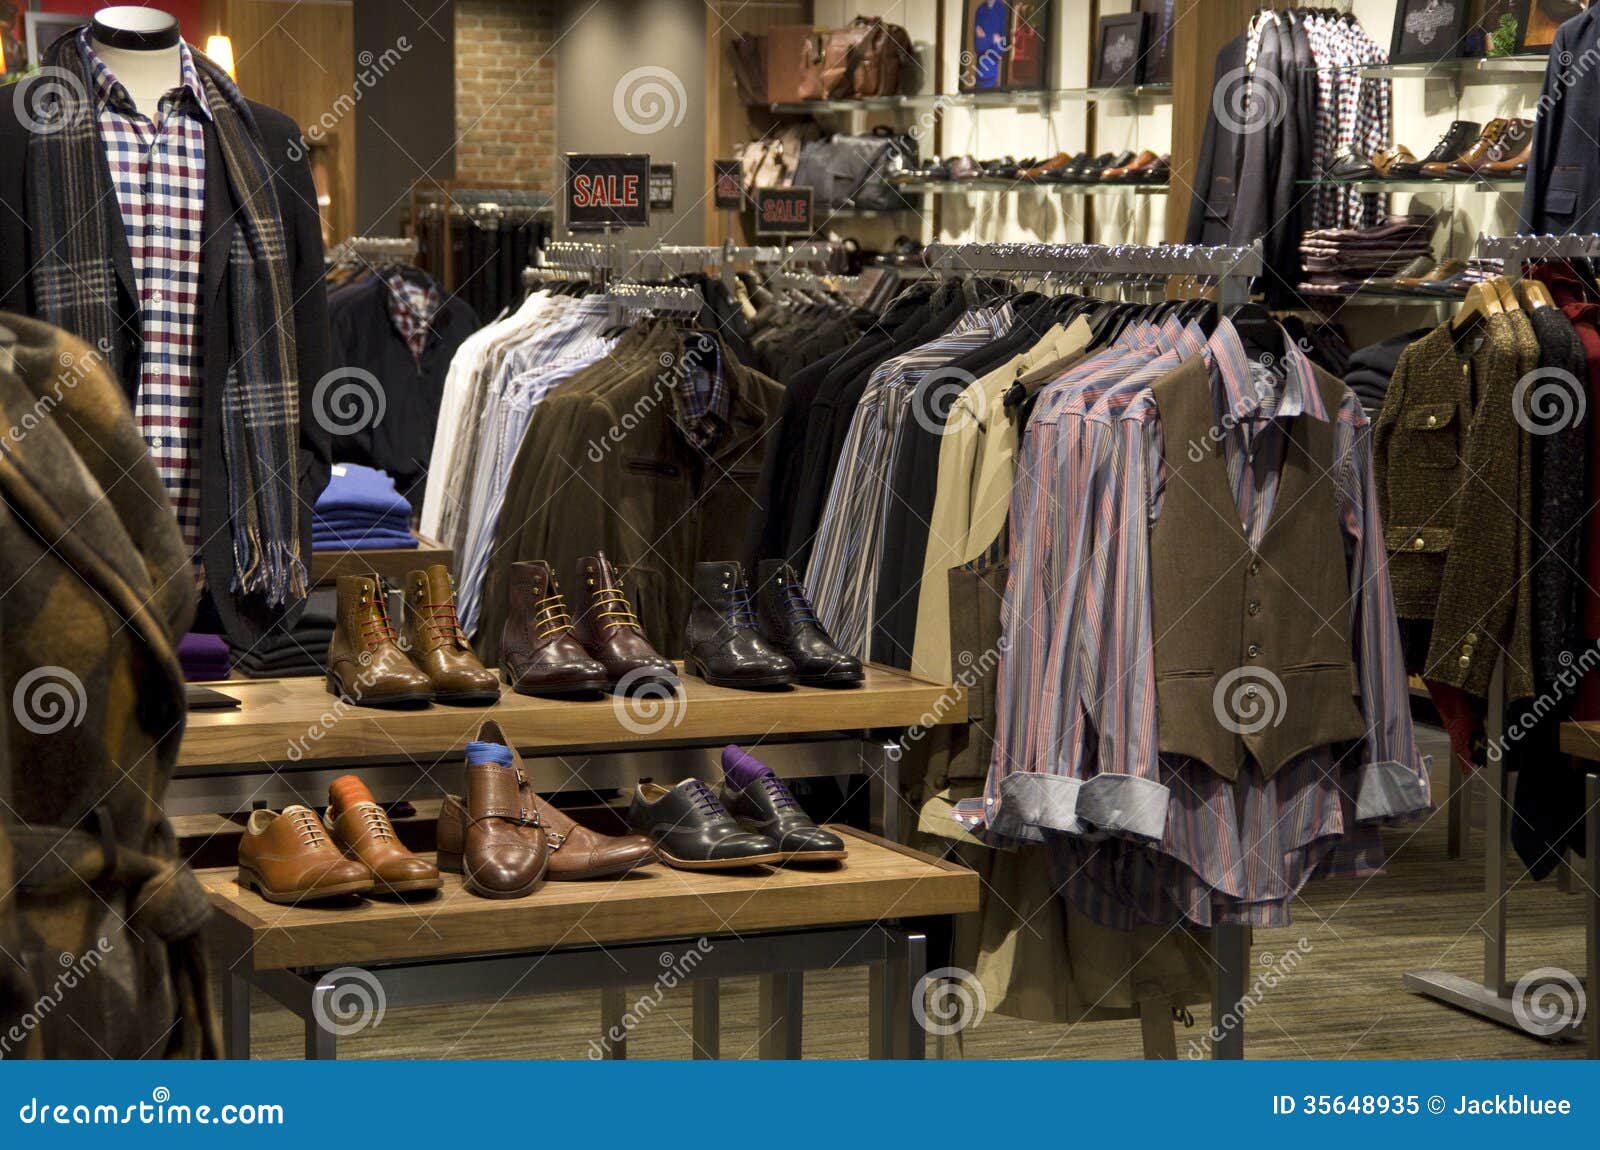 Man Men Fashion Clothing Shoe Store Stock Image - Image Of Shelves, Clothing:  35648935